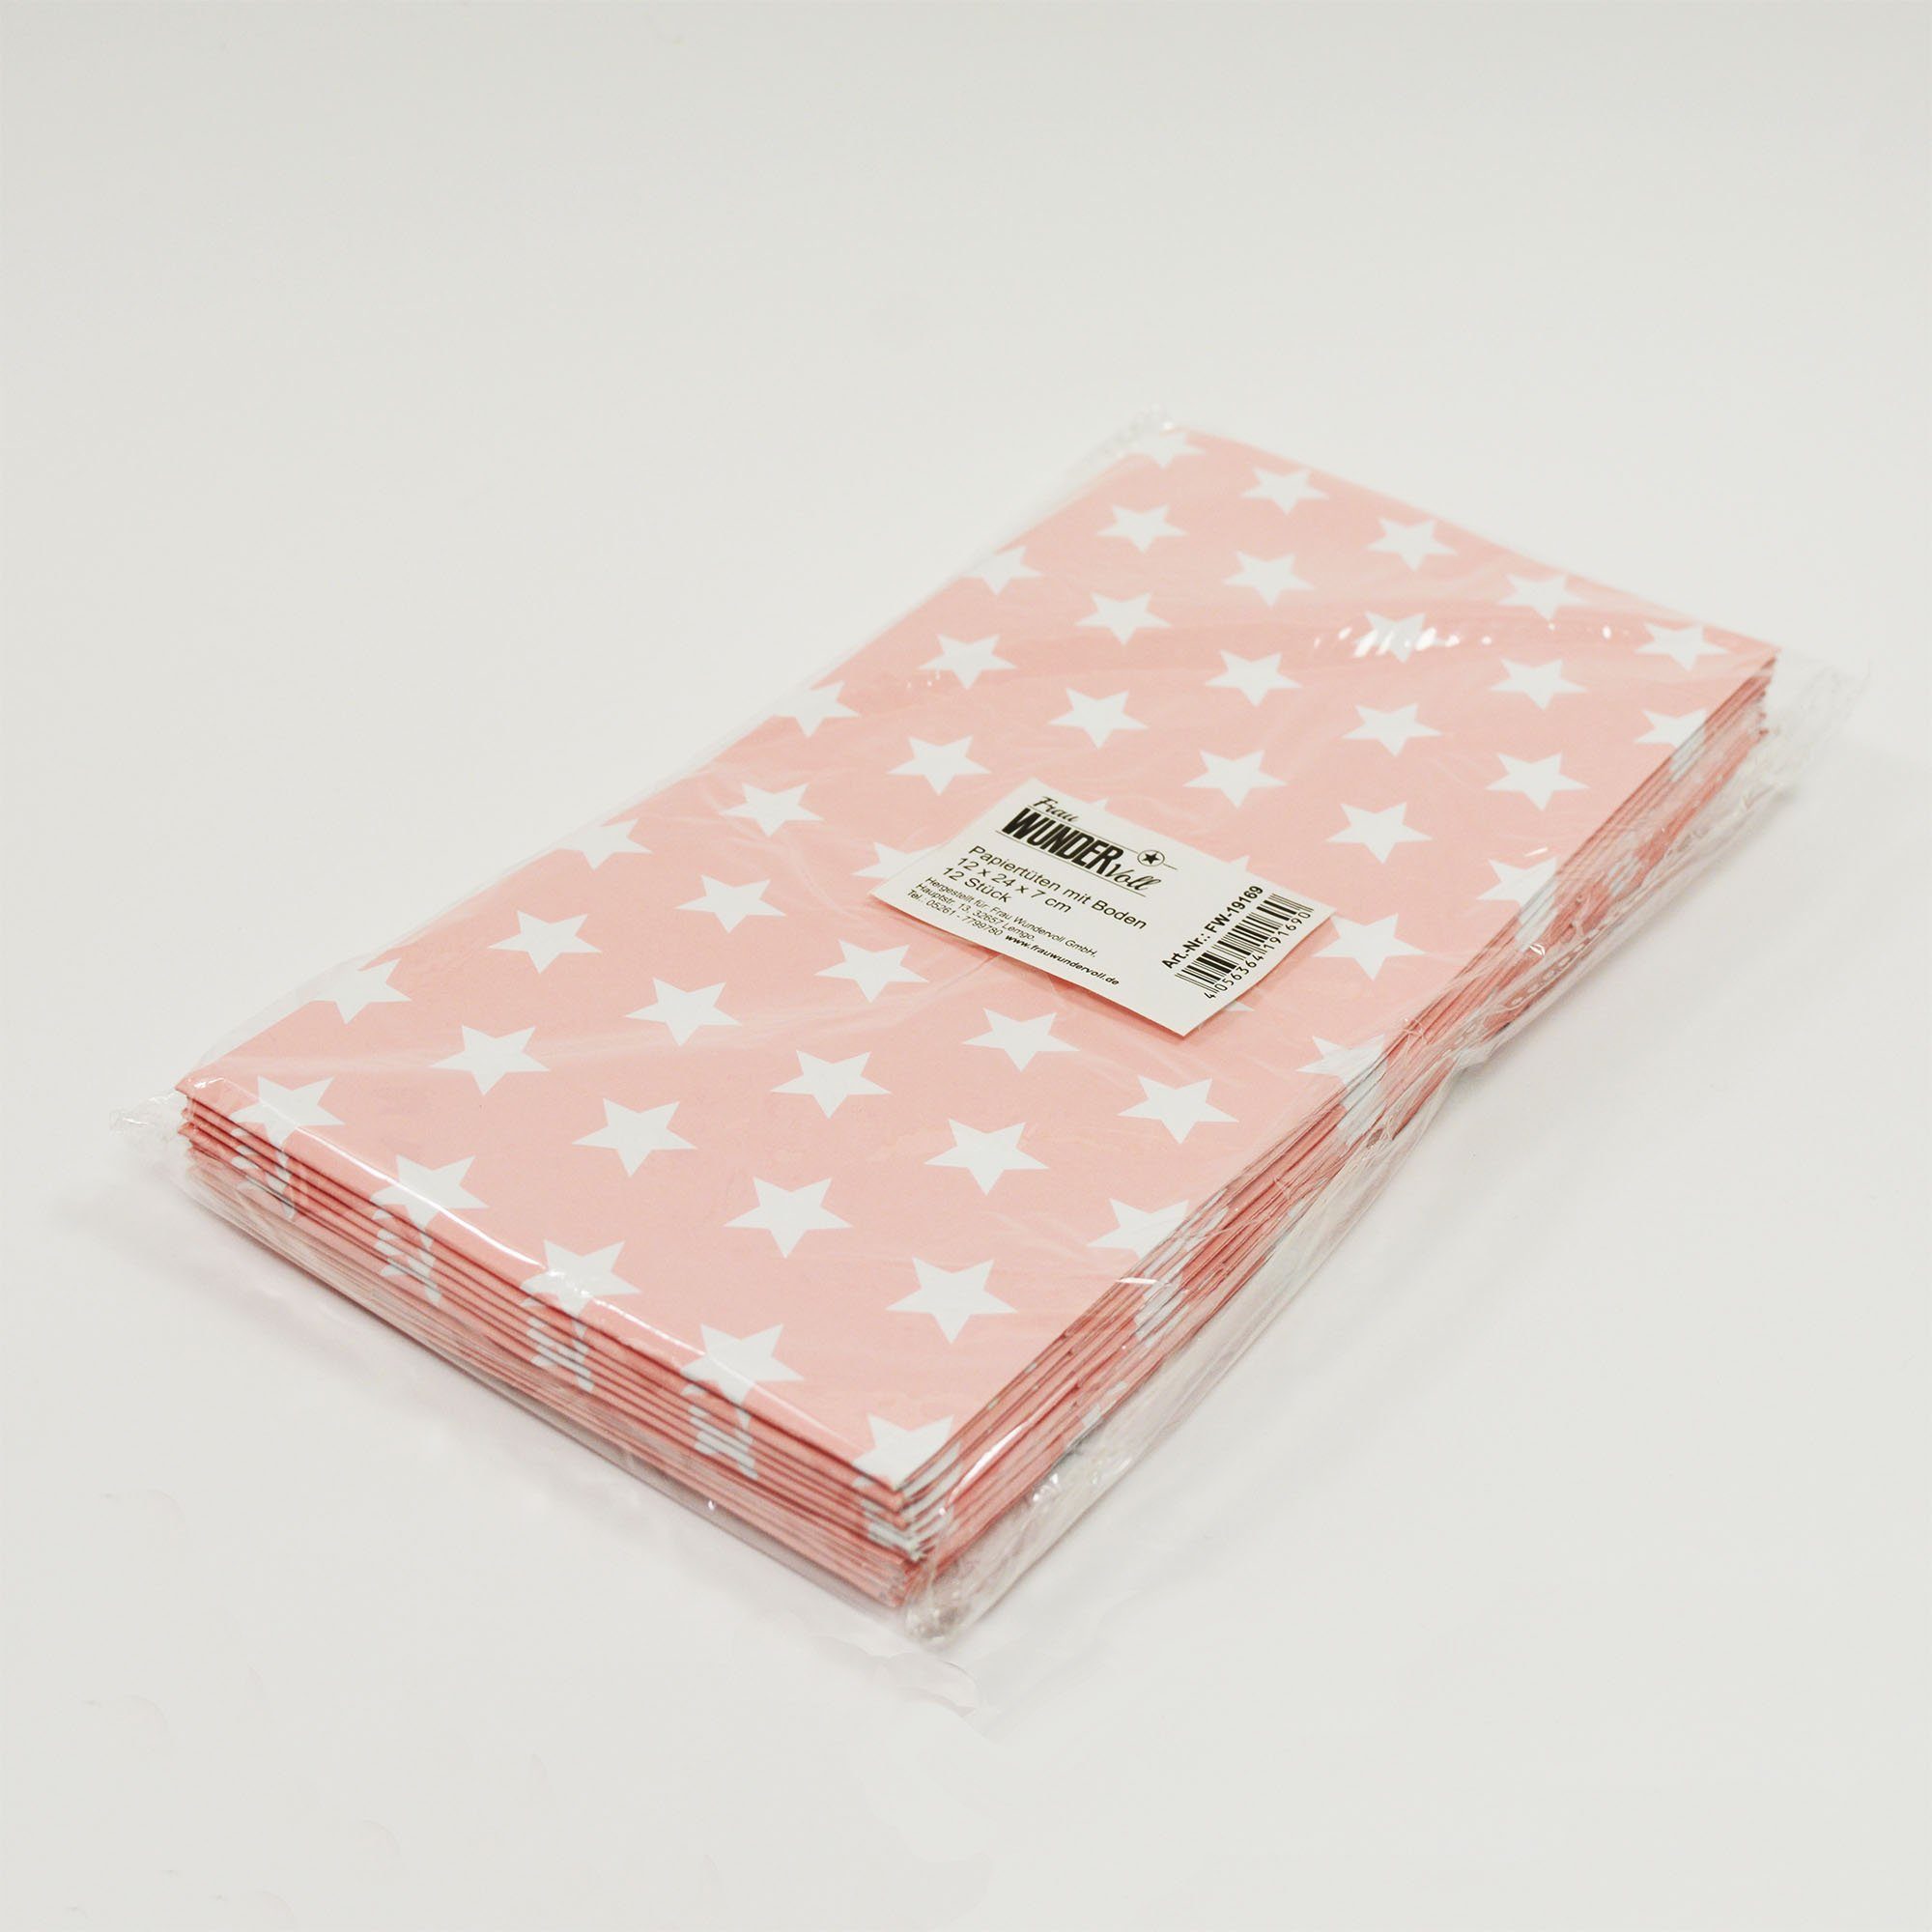 Frau WUNDERVoll Papierdekoration Papiertüten Papier mit 100g weiße rosa, Boden, Sterne, (Angebot)